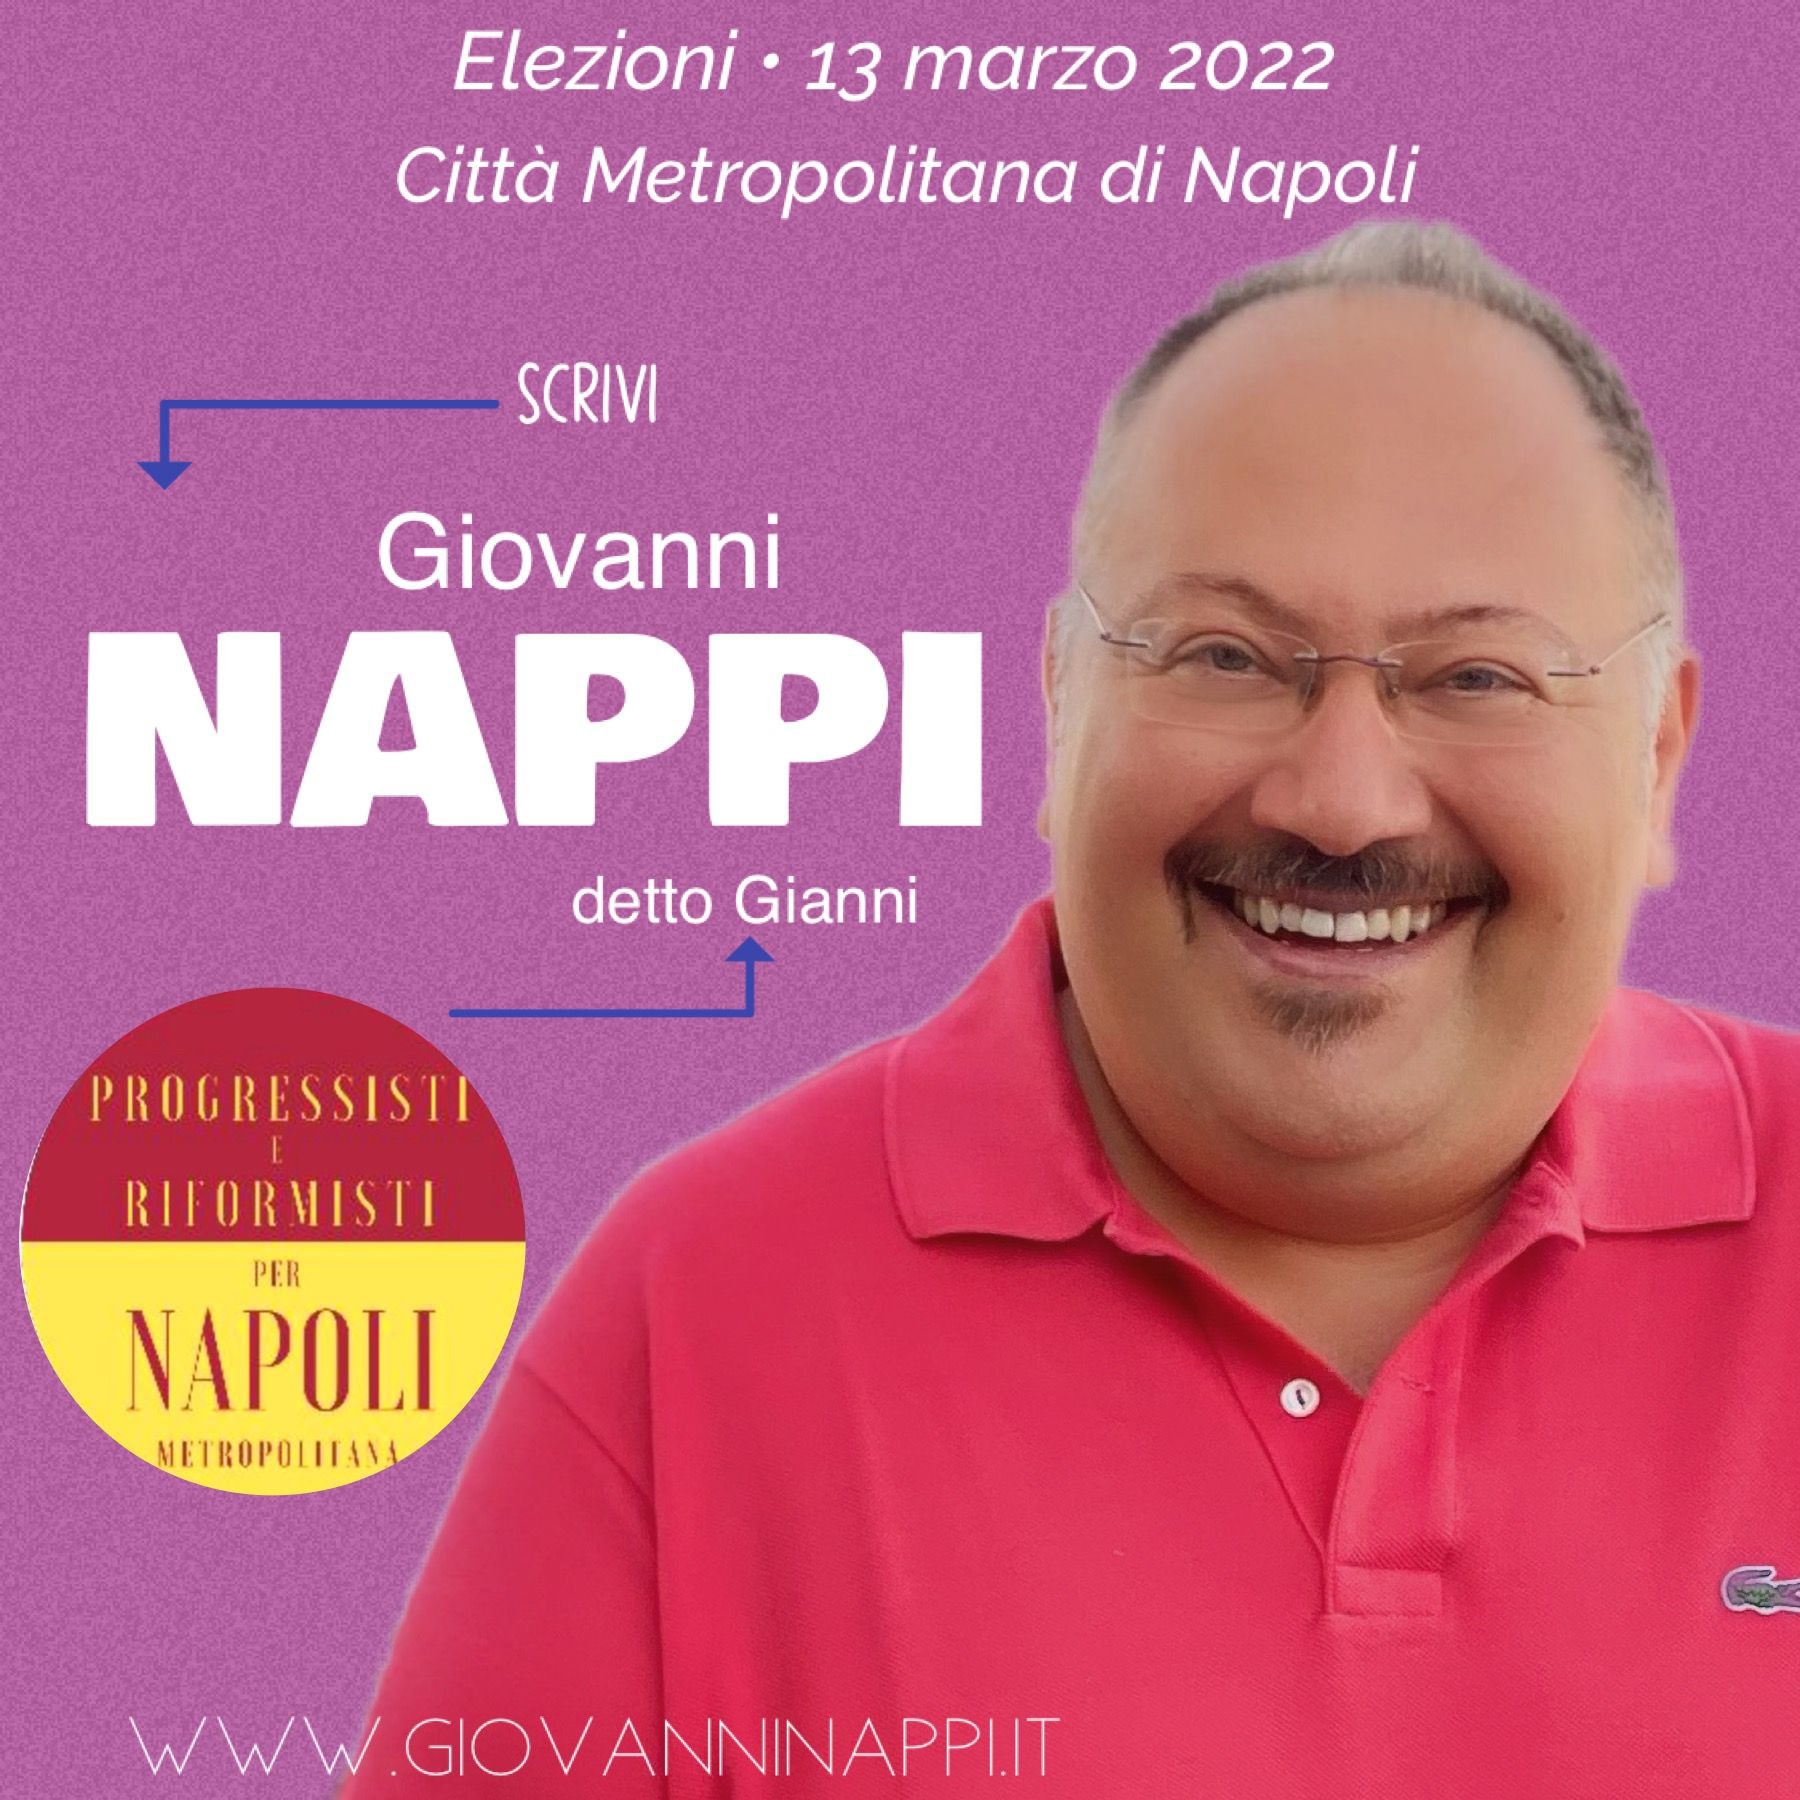 Elezioni Città Metropolitana, Giovanni Nappi candidato nella lista Progressisti e Riformisti per Napoli